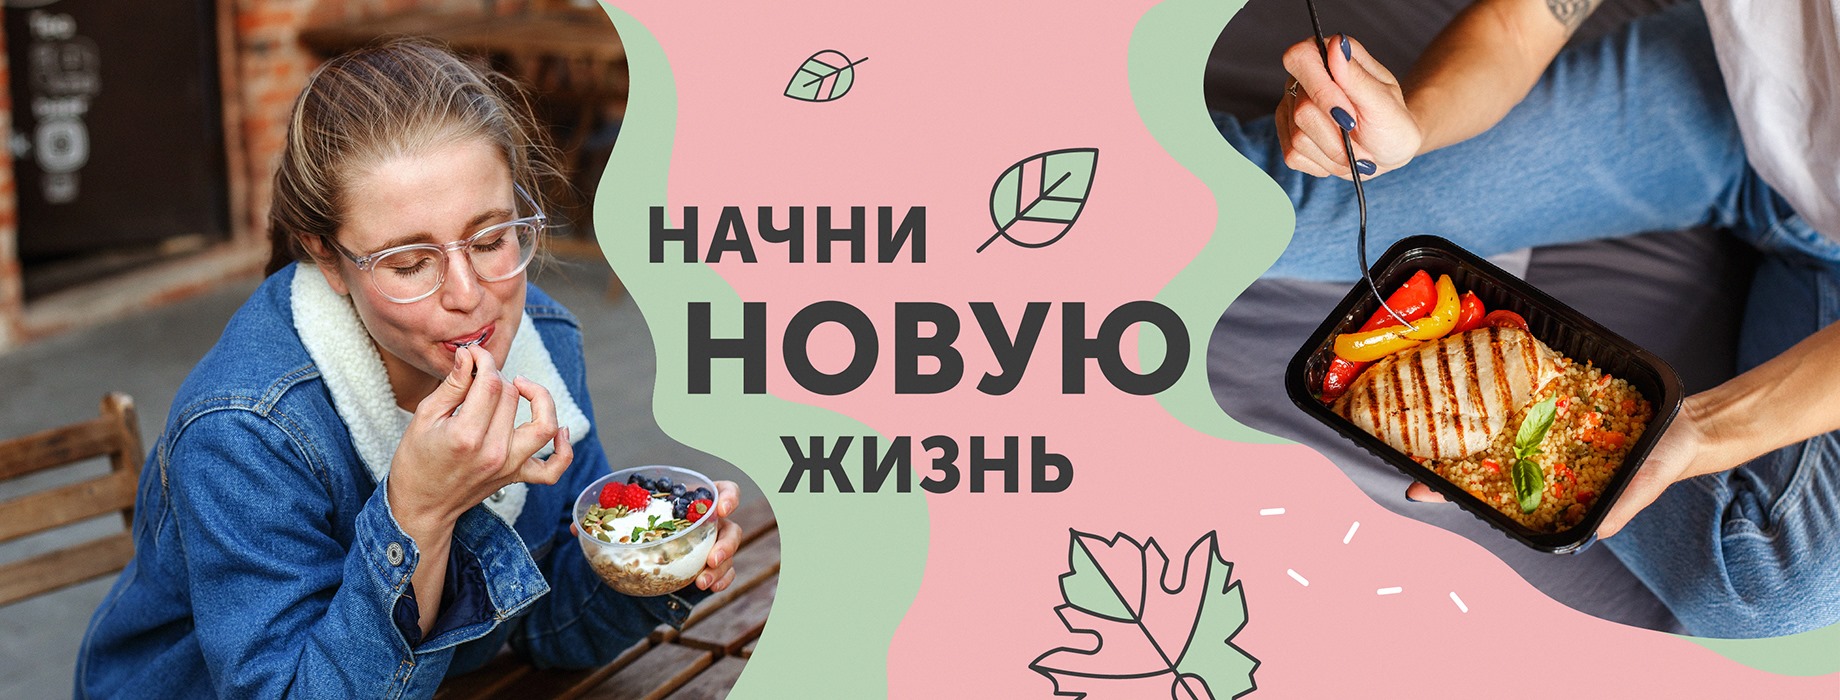 Ешь вкусно - худей легко! День готовой и полезной еды — всего 675 рублей!